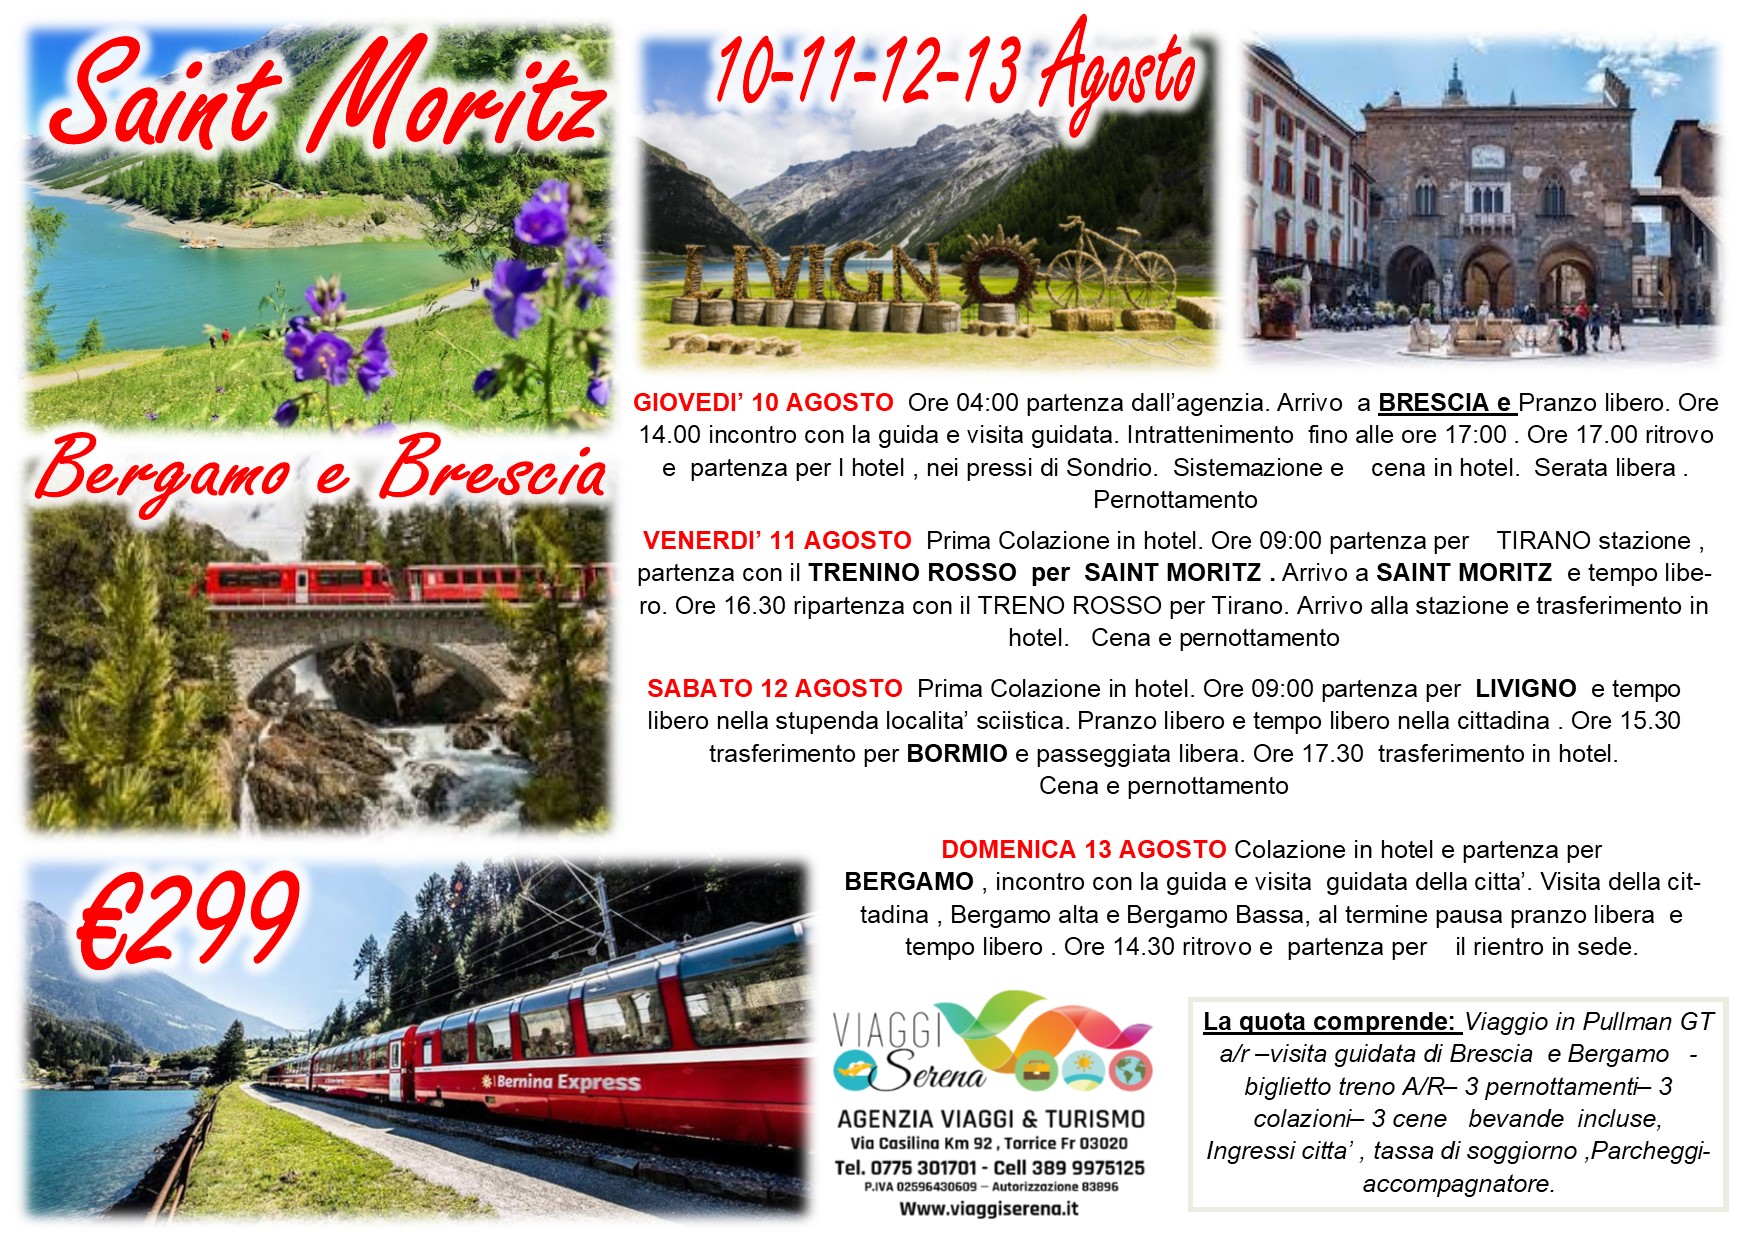 Viaggi di Gruppo: Trenino Rosso del Bernina “Saint Moritz” Brescia, Livigno & Bergamo 10-11-12-13 Agosto  €299,00